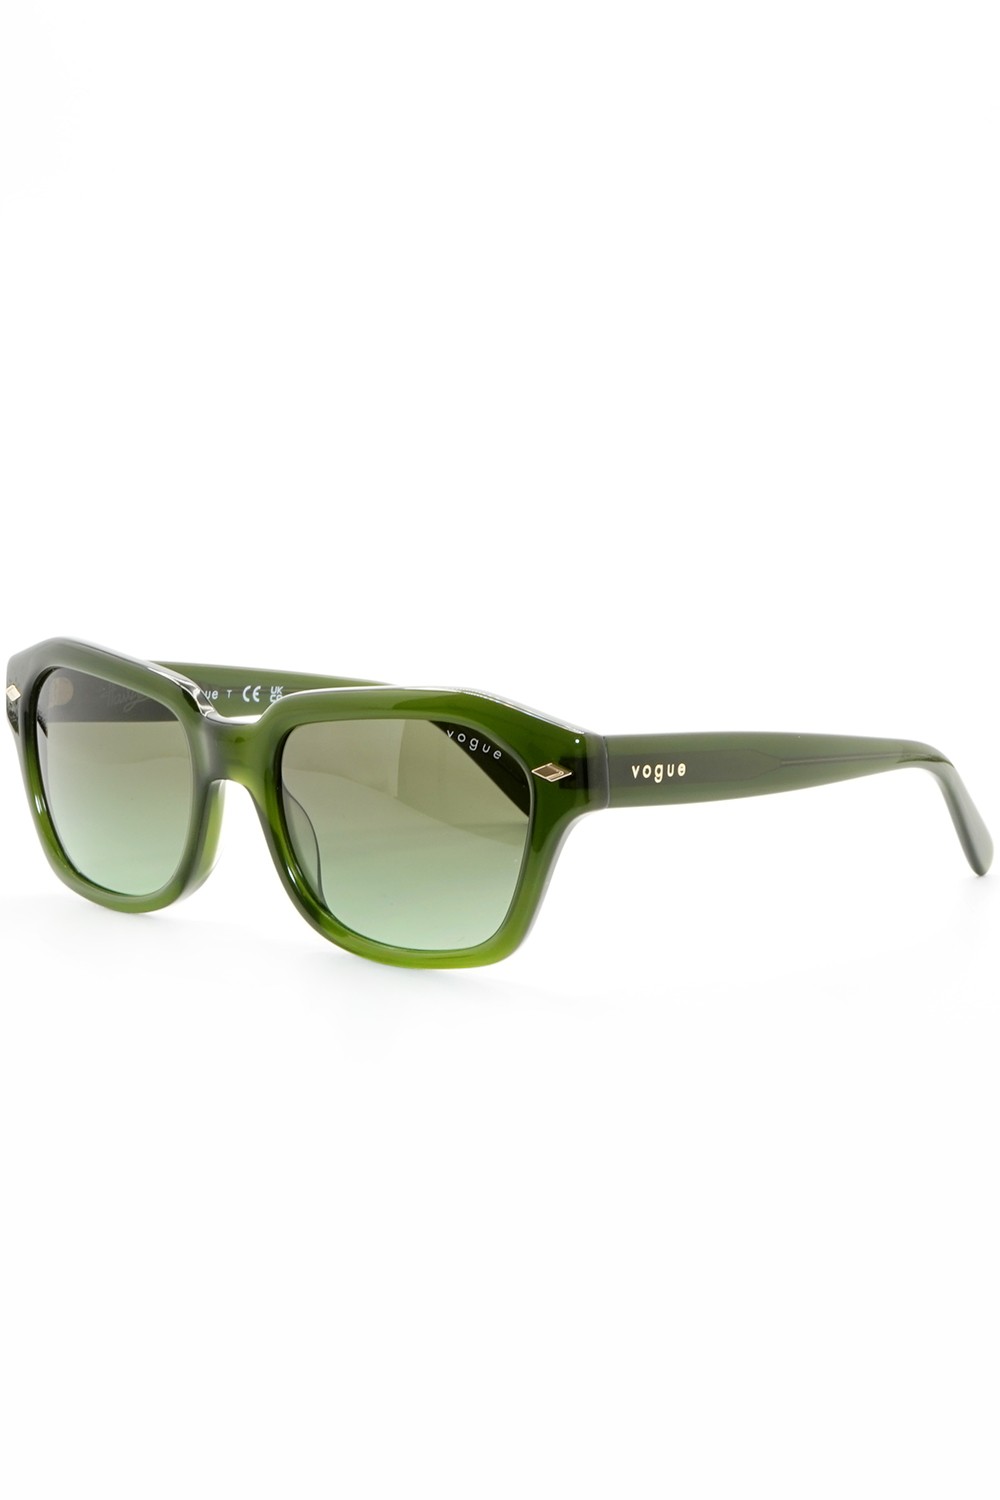 Vogue - Occhiali da sole in celluloide rettangolari per donna verde - VO5444S